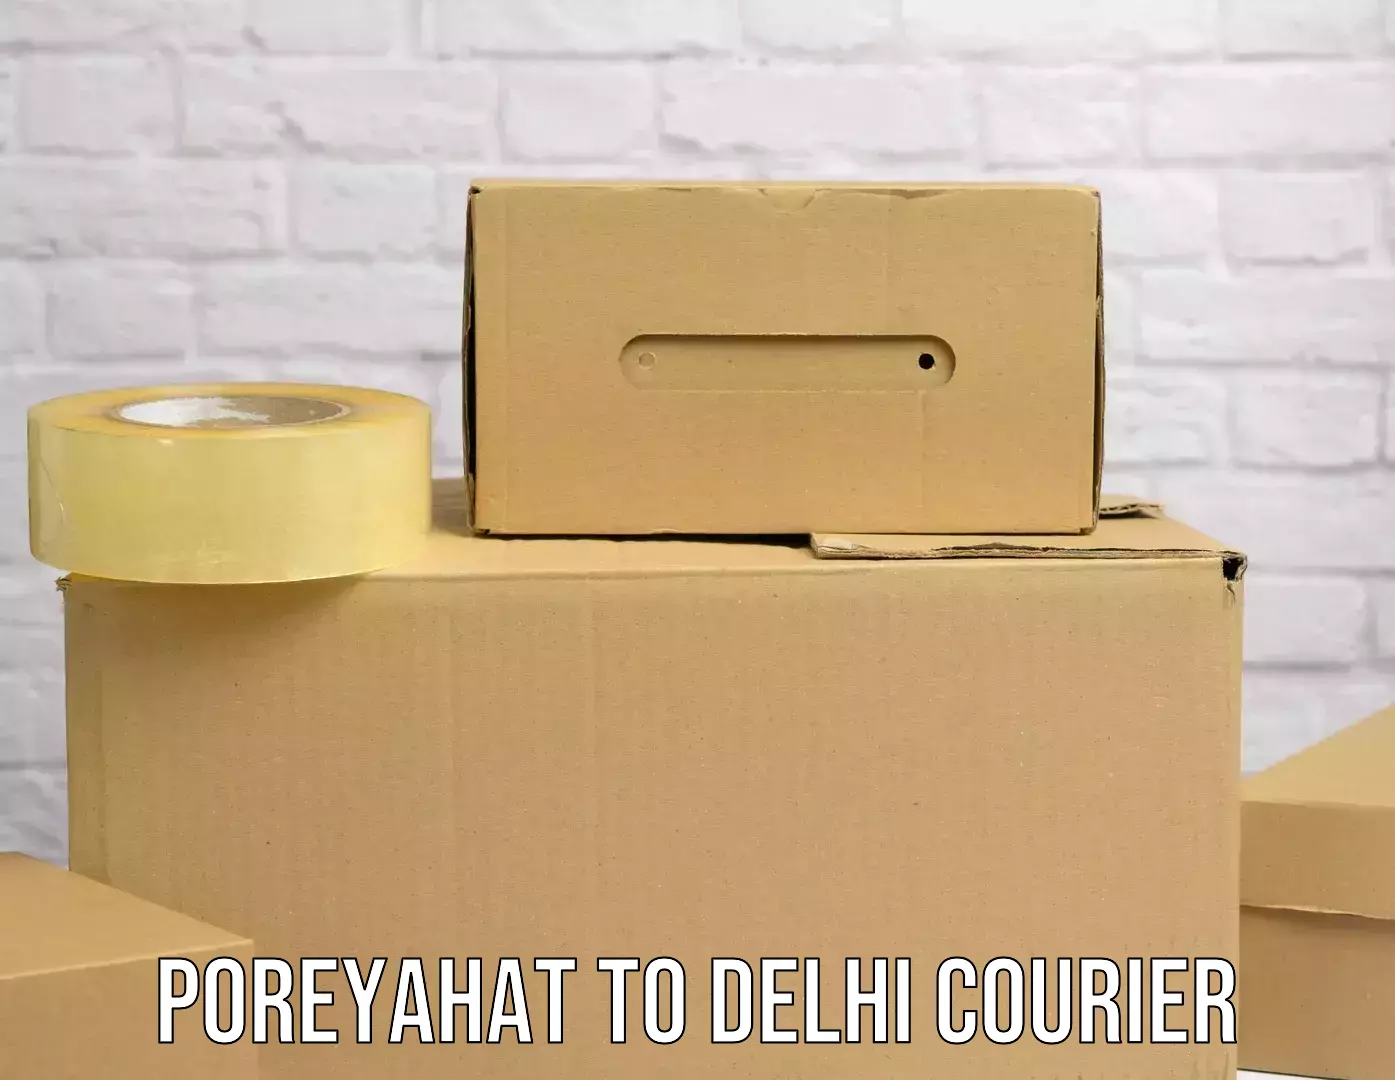 Weekend courier service Poreyahat to Sarojini Nagar